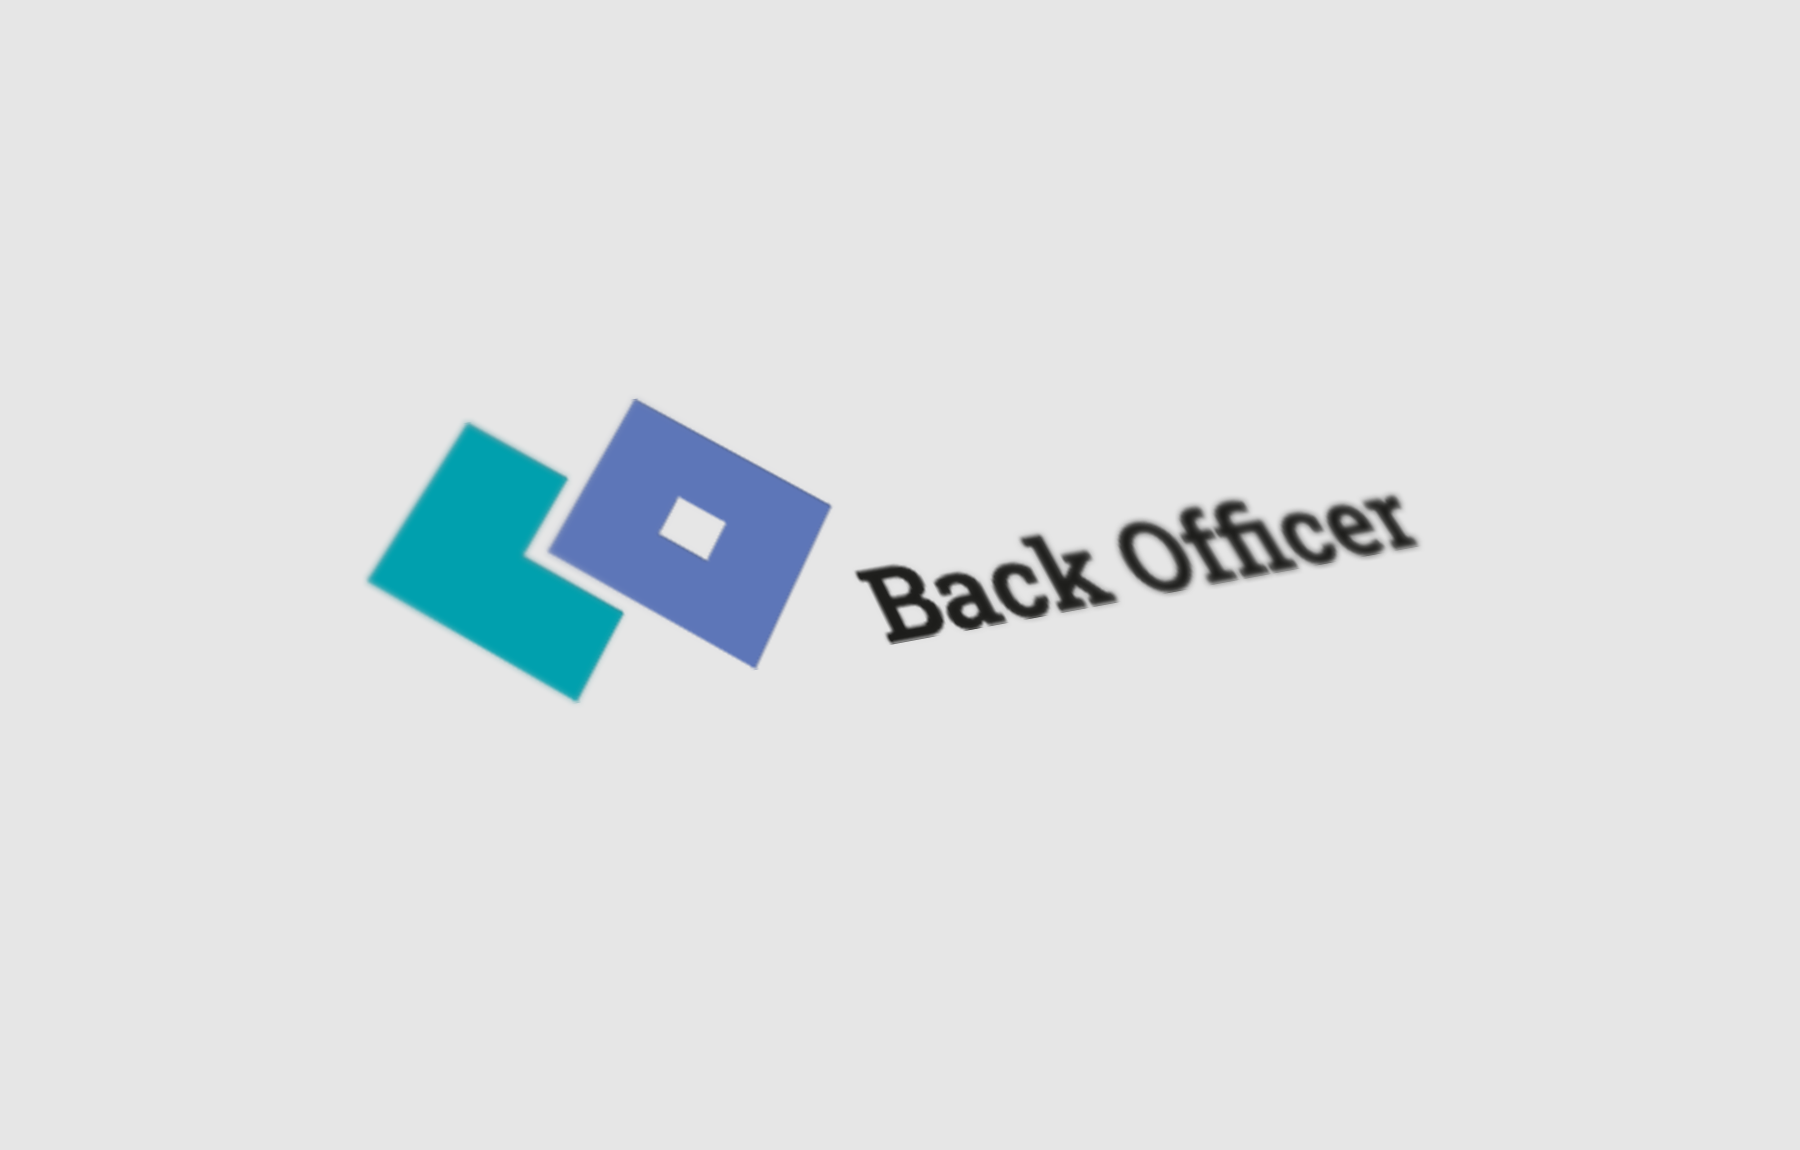 BackOfficer